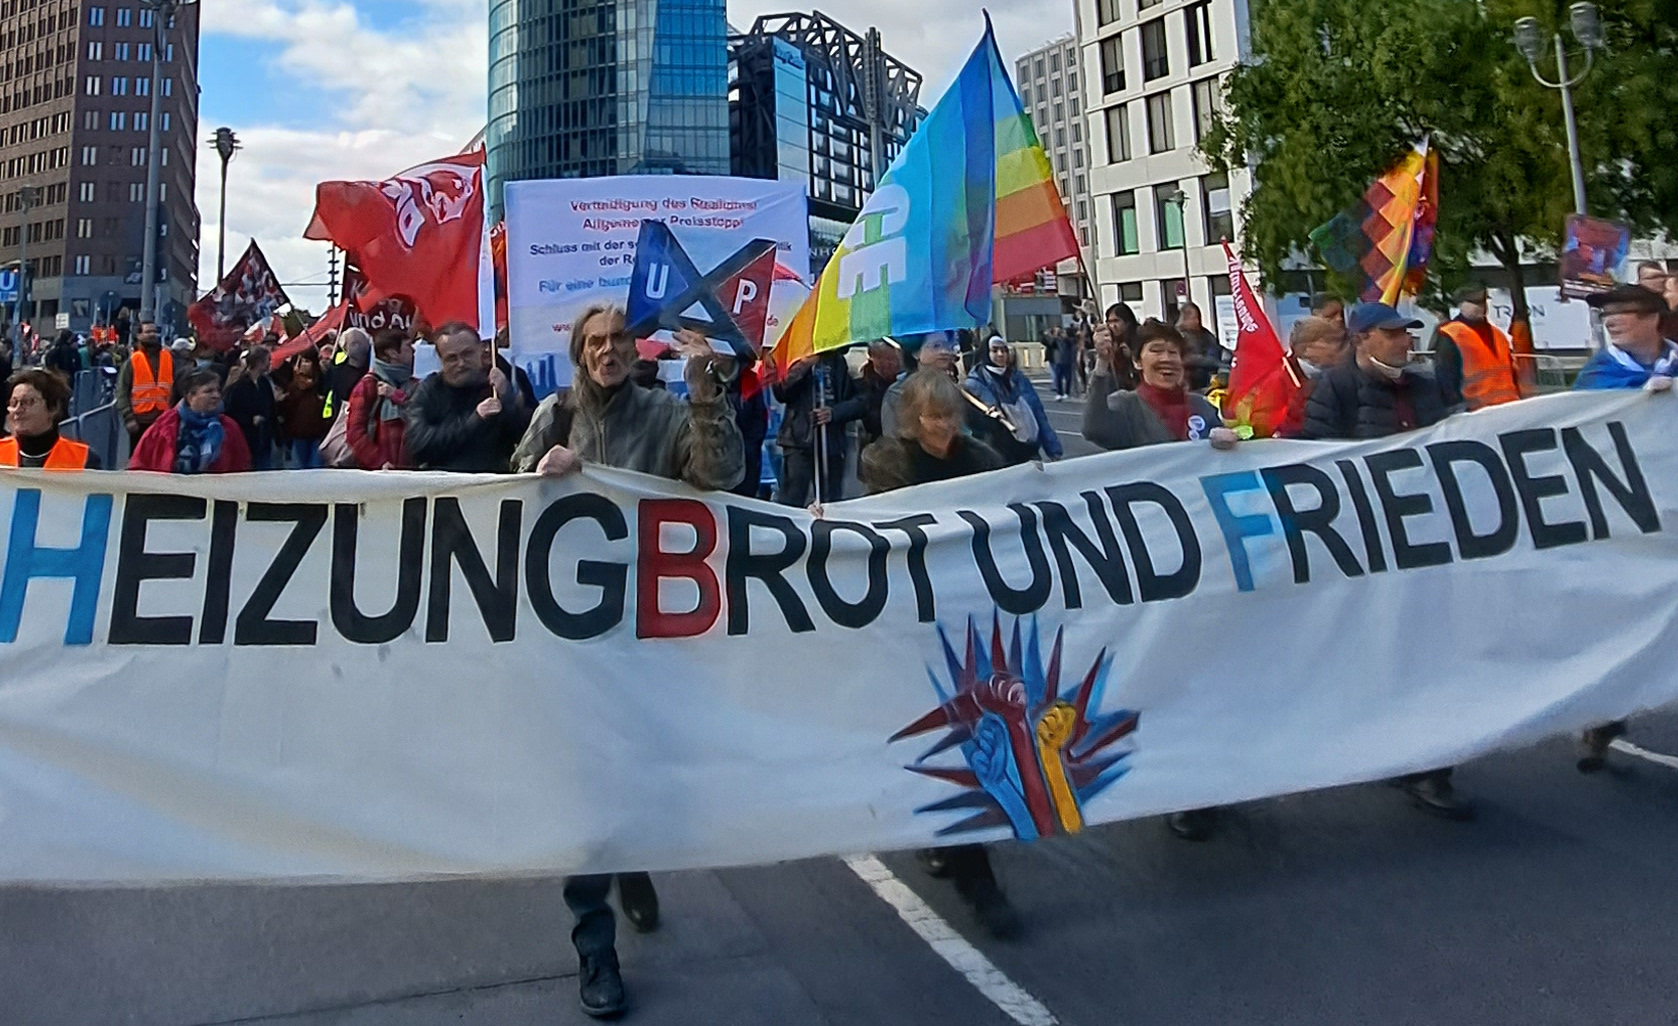 Heizung, Brot und Frieden: Demonstration am 3. Oktober 2022